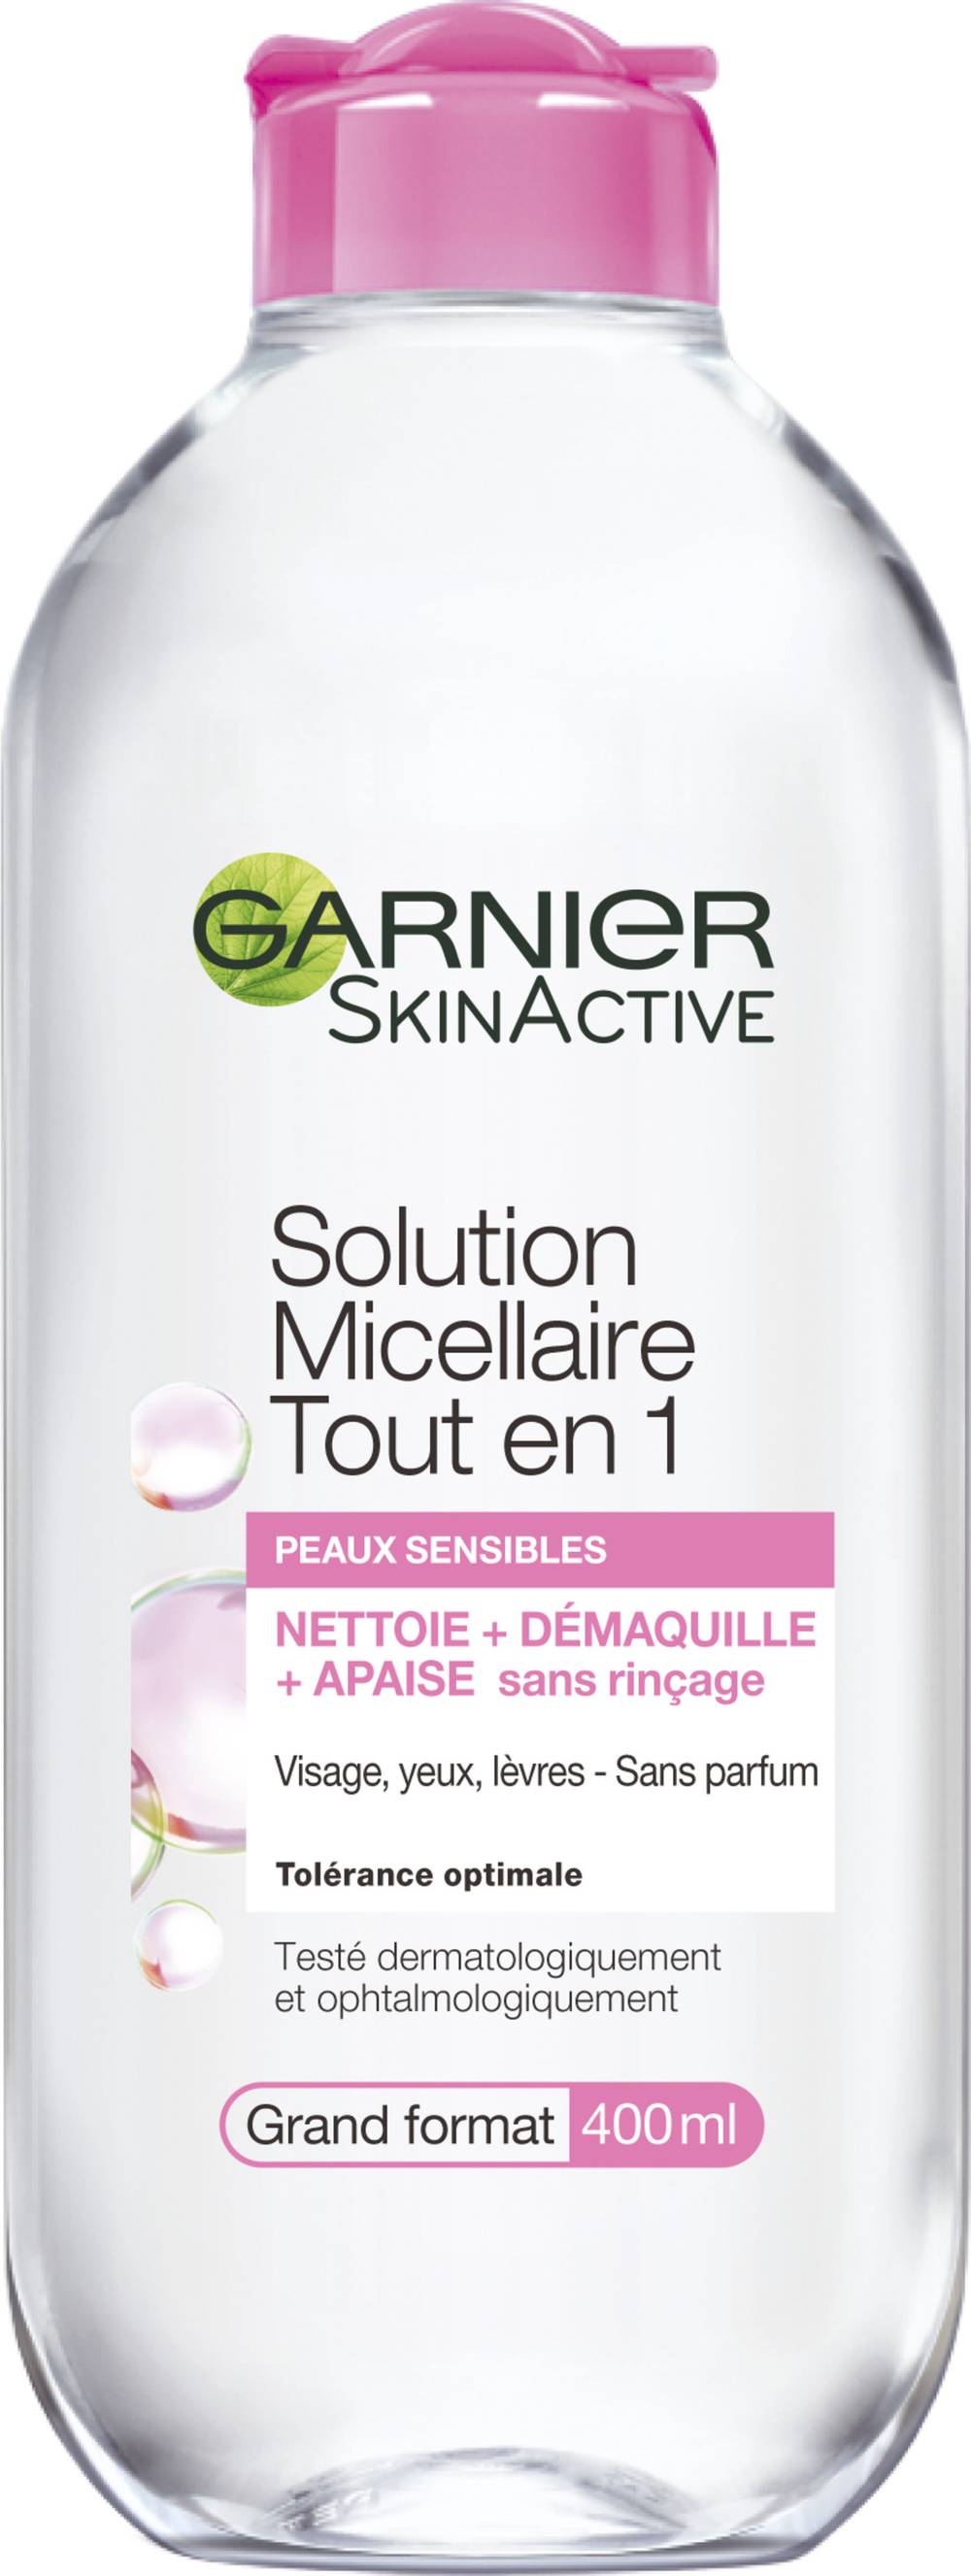 Garnier - Skinactive solution micellaire tout en 1